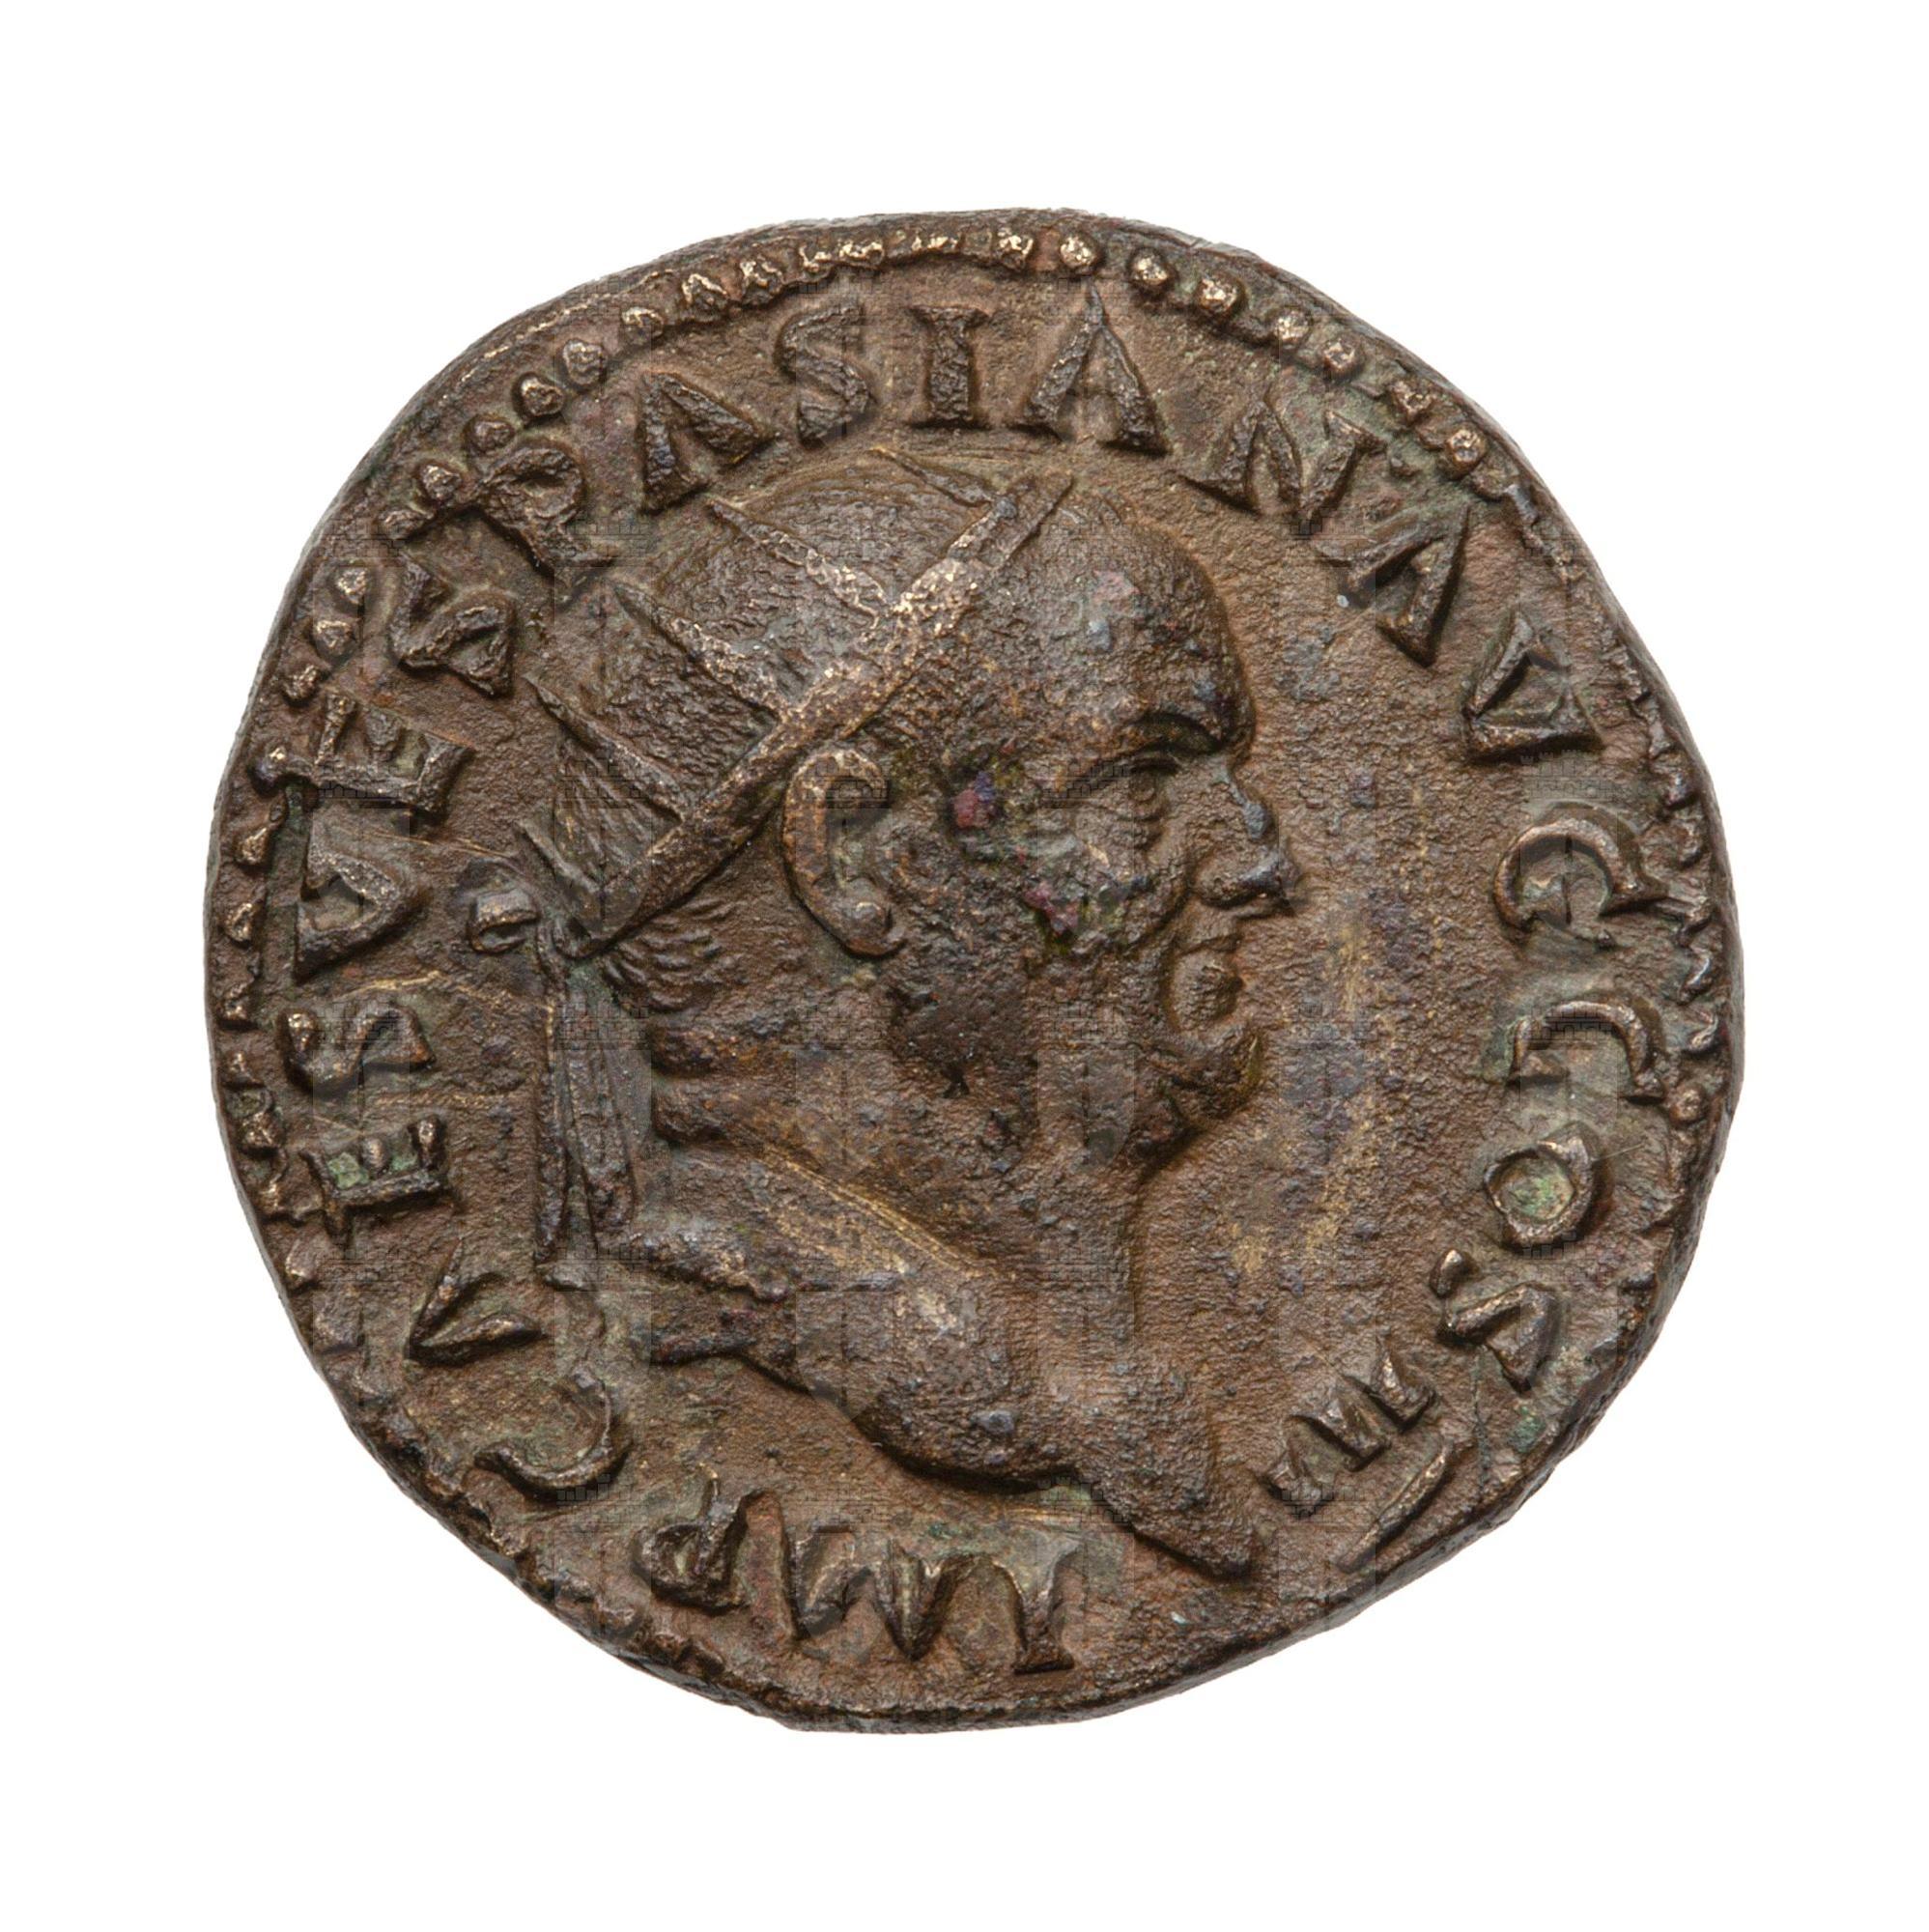 https://catalogomusei.comune.trieste.it/samira/resource/image/reperti-archeologici/Roma 219a D Vespasiano.jpg?token=65e6c7b688a95